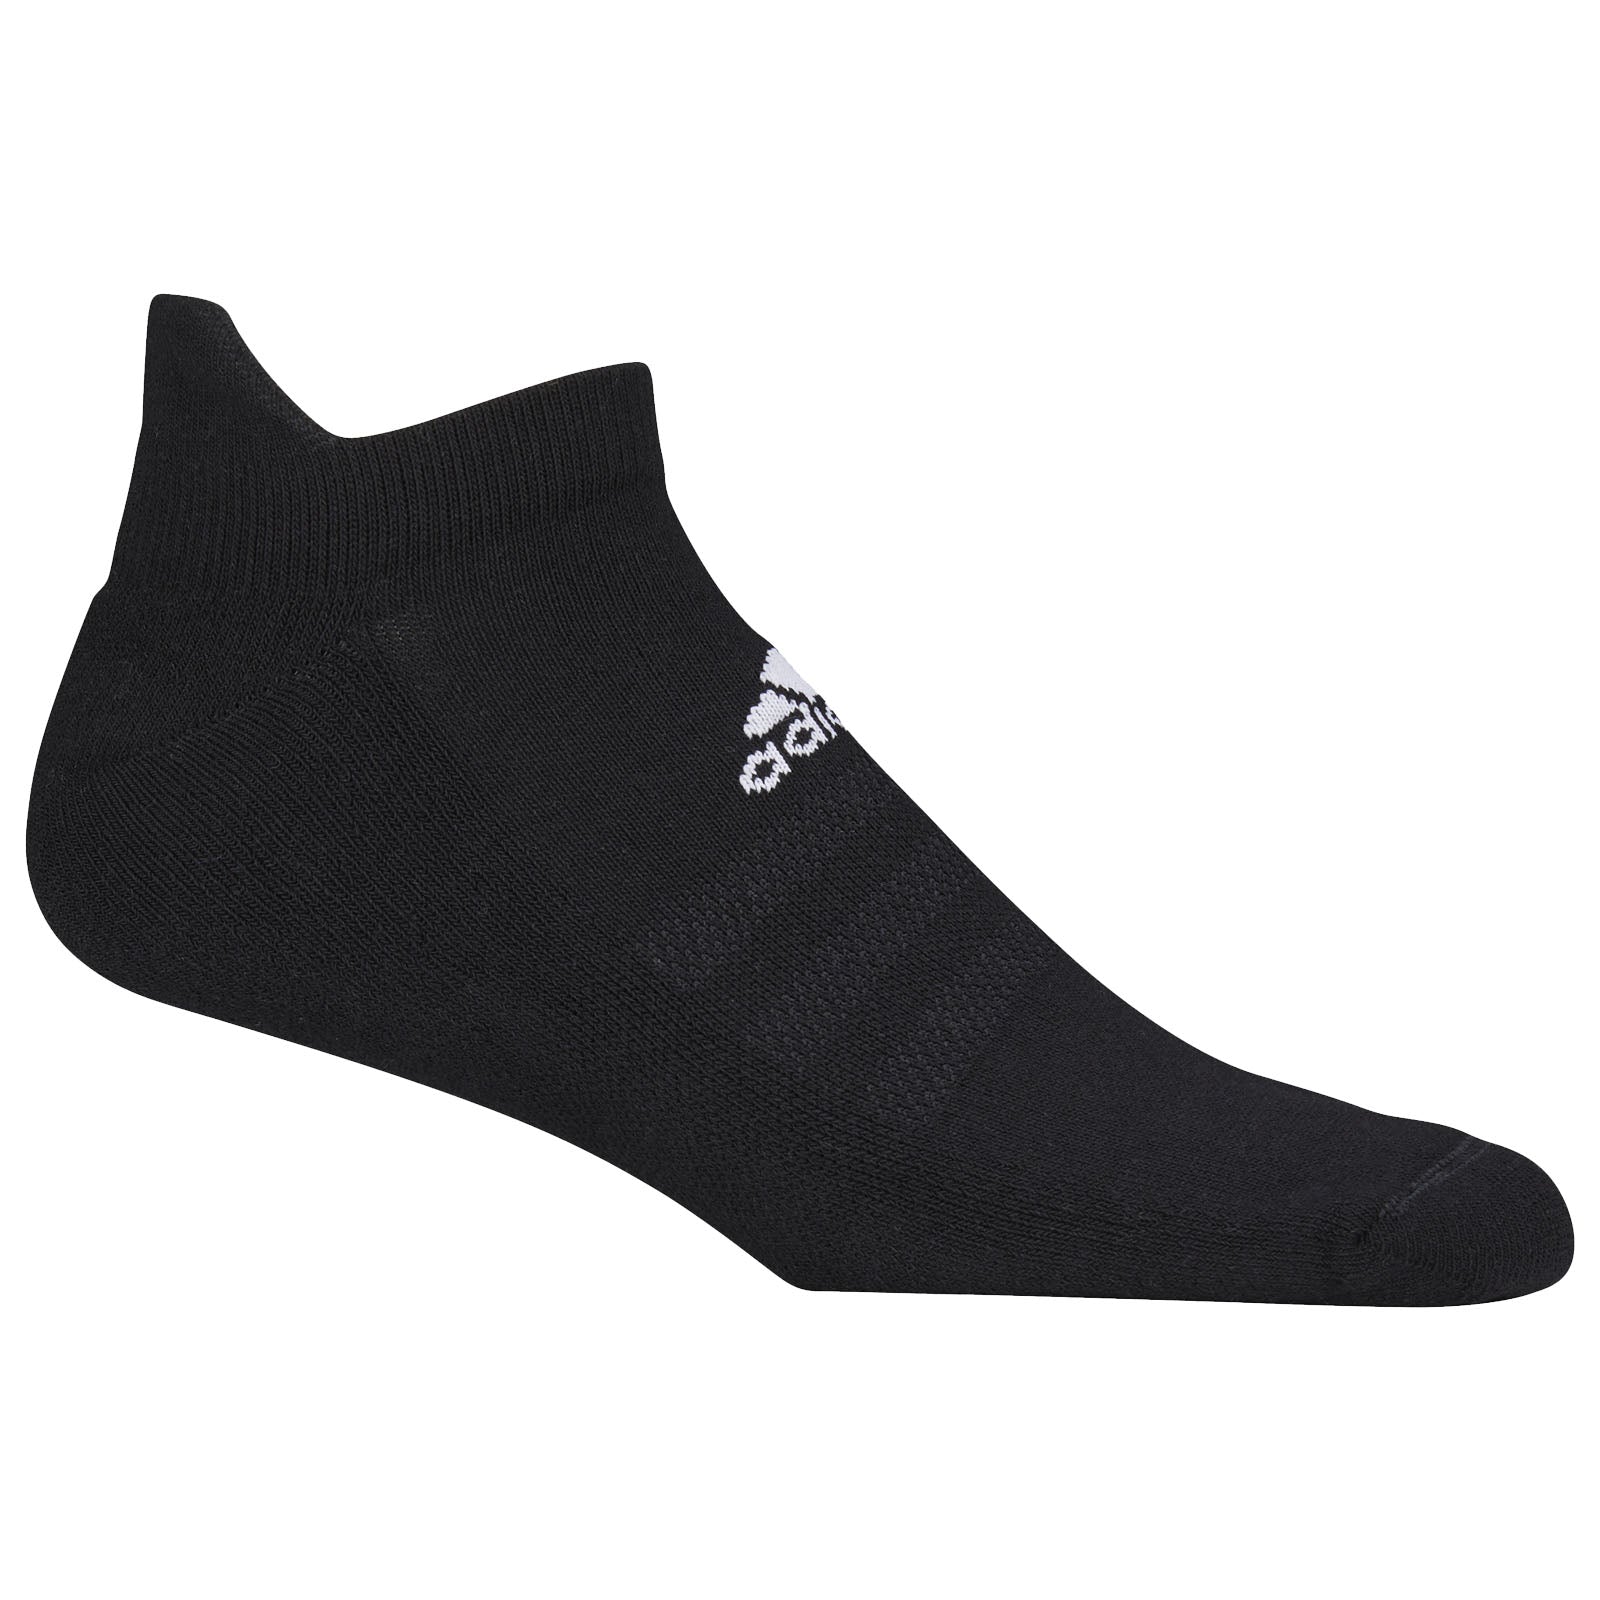 adidas Mens Ankle Socks